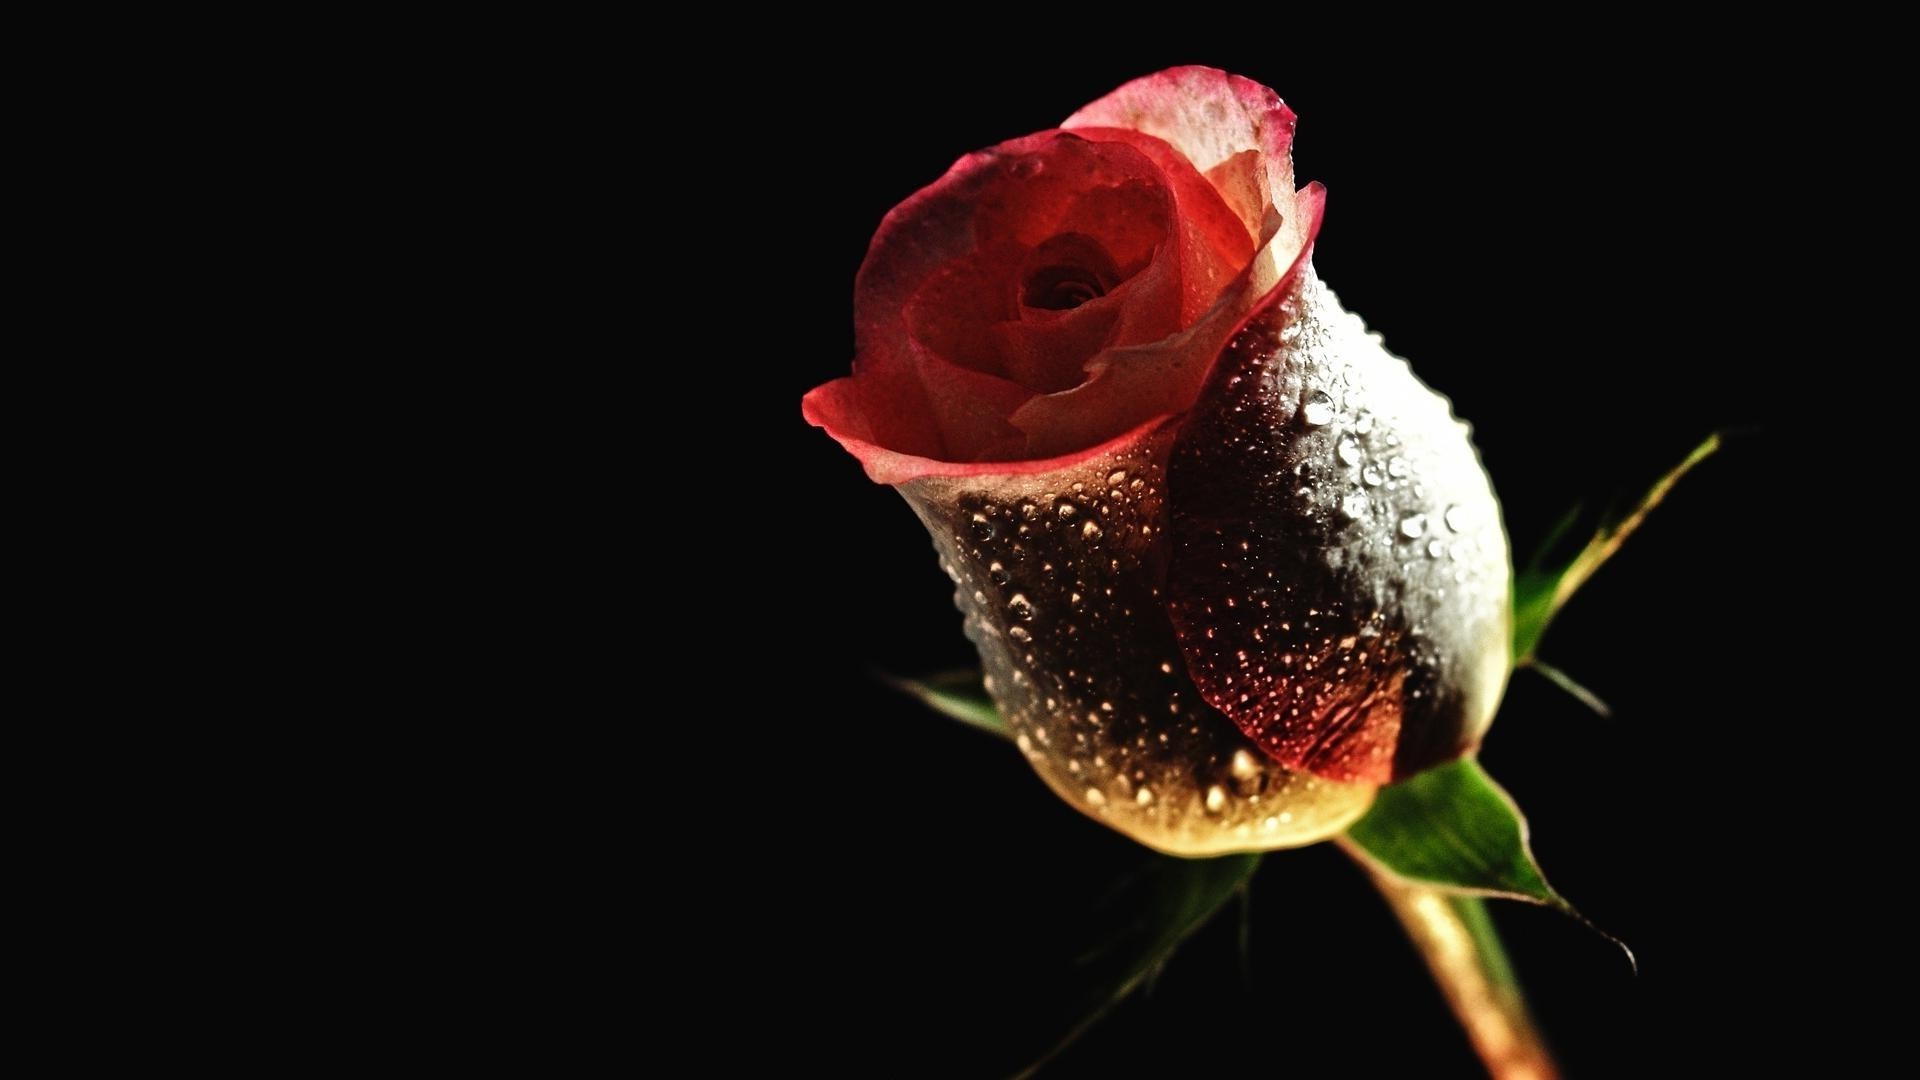 цветы цветок роза природа рабочего стола красивые цвет лепесток флора лист любовь цветочные падение блюминг крупным планом романтика изолированные